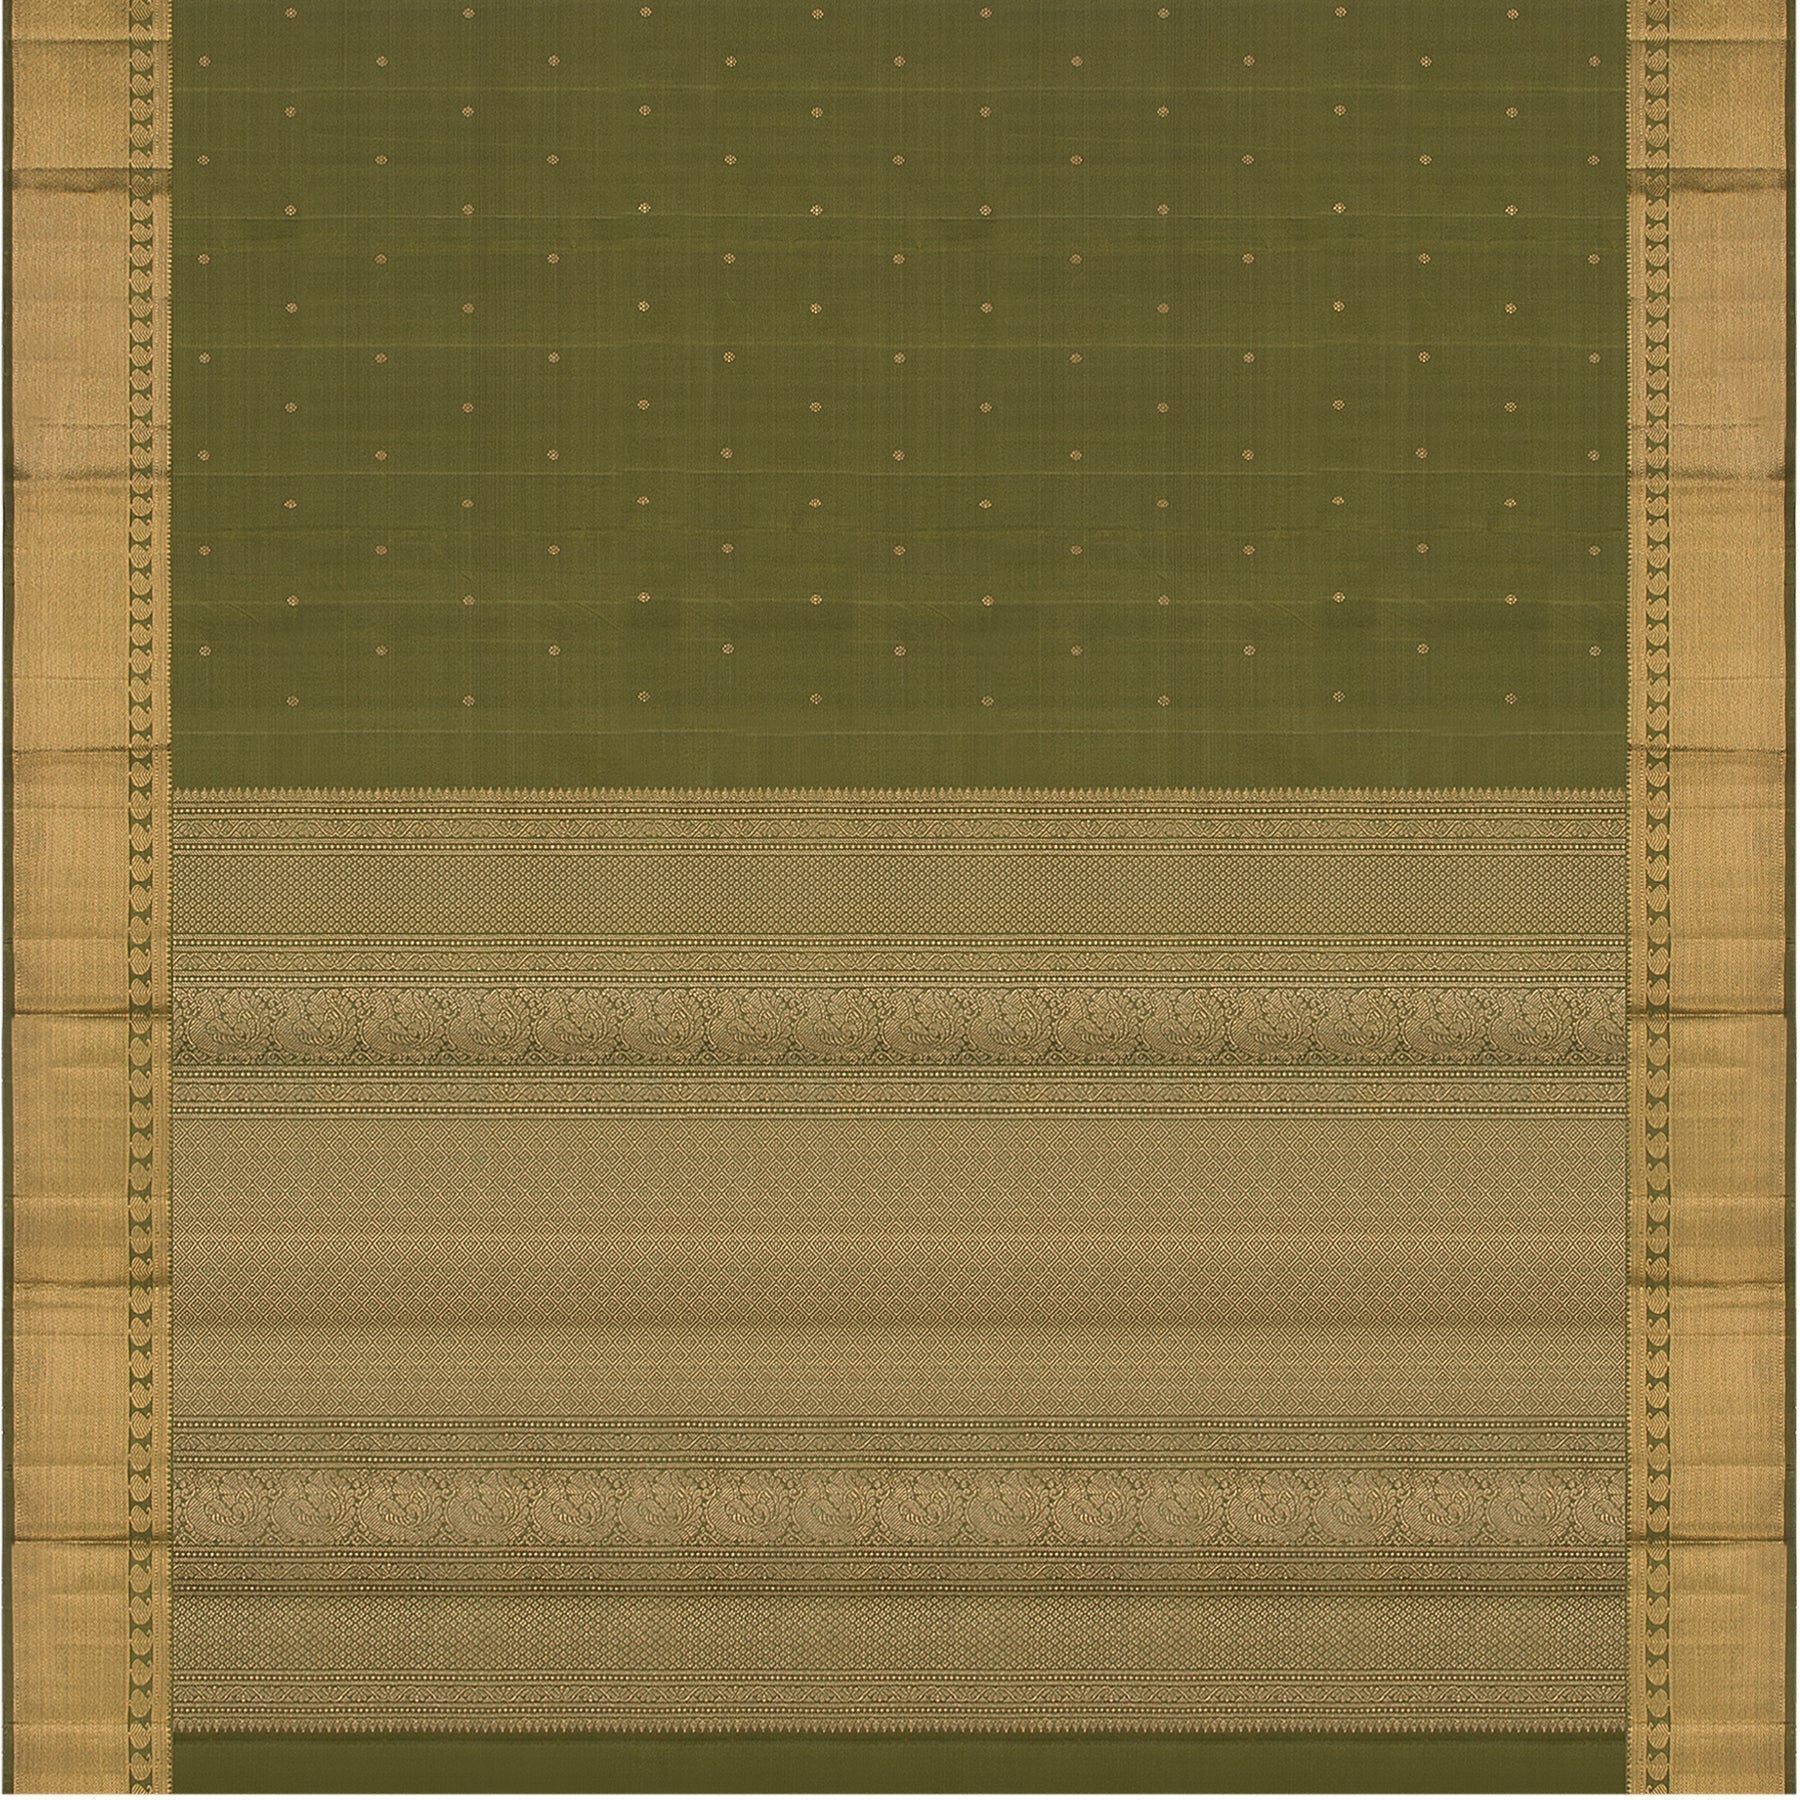 Kanakavalli Kanjivaram Silk Sari 23-611-HS001-01259 - Full View